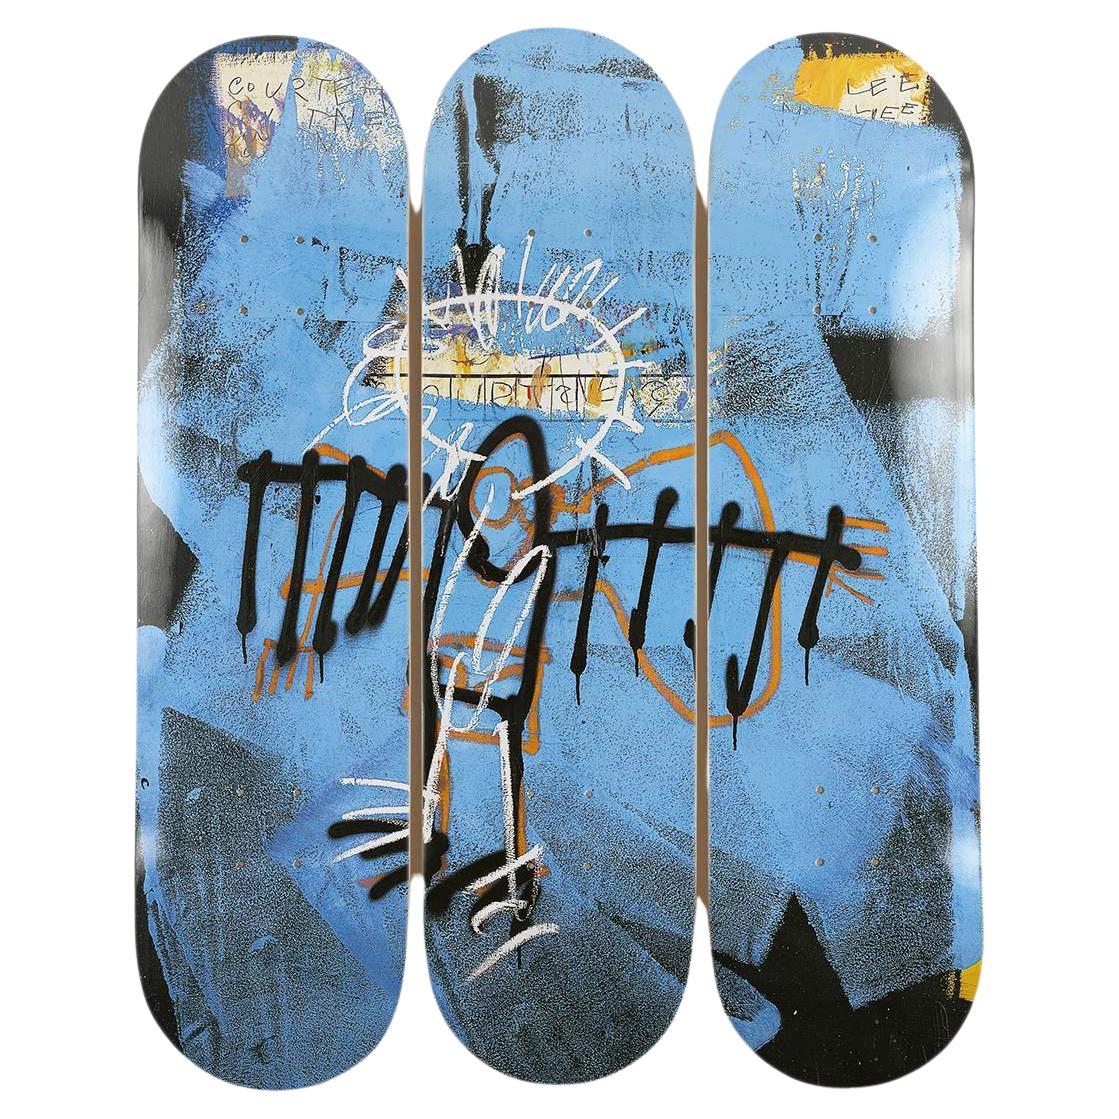 Skateboards « Angel » sans titre d'après Jean-Michel Basquiat